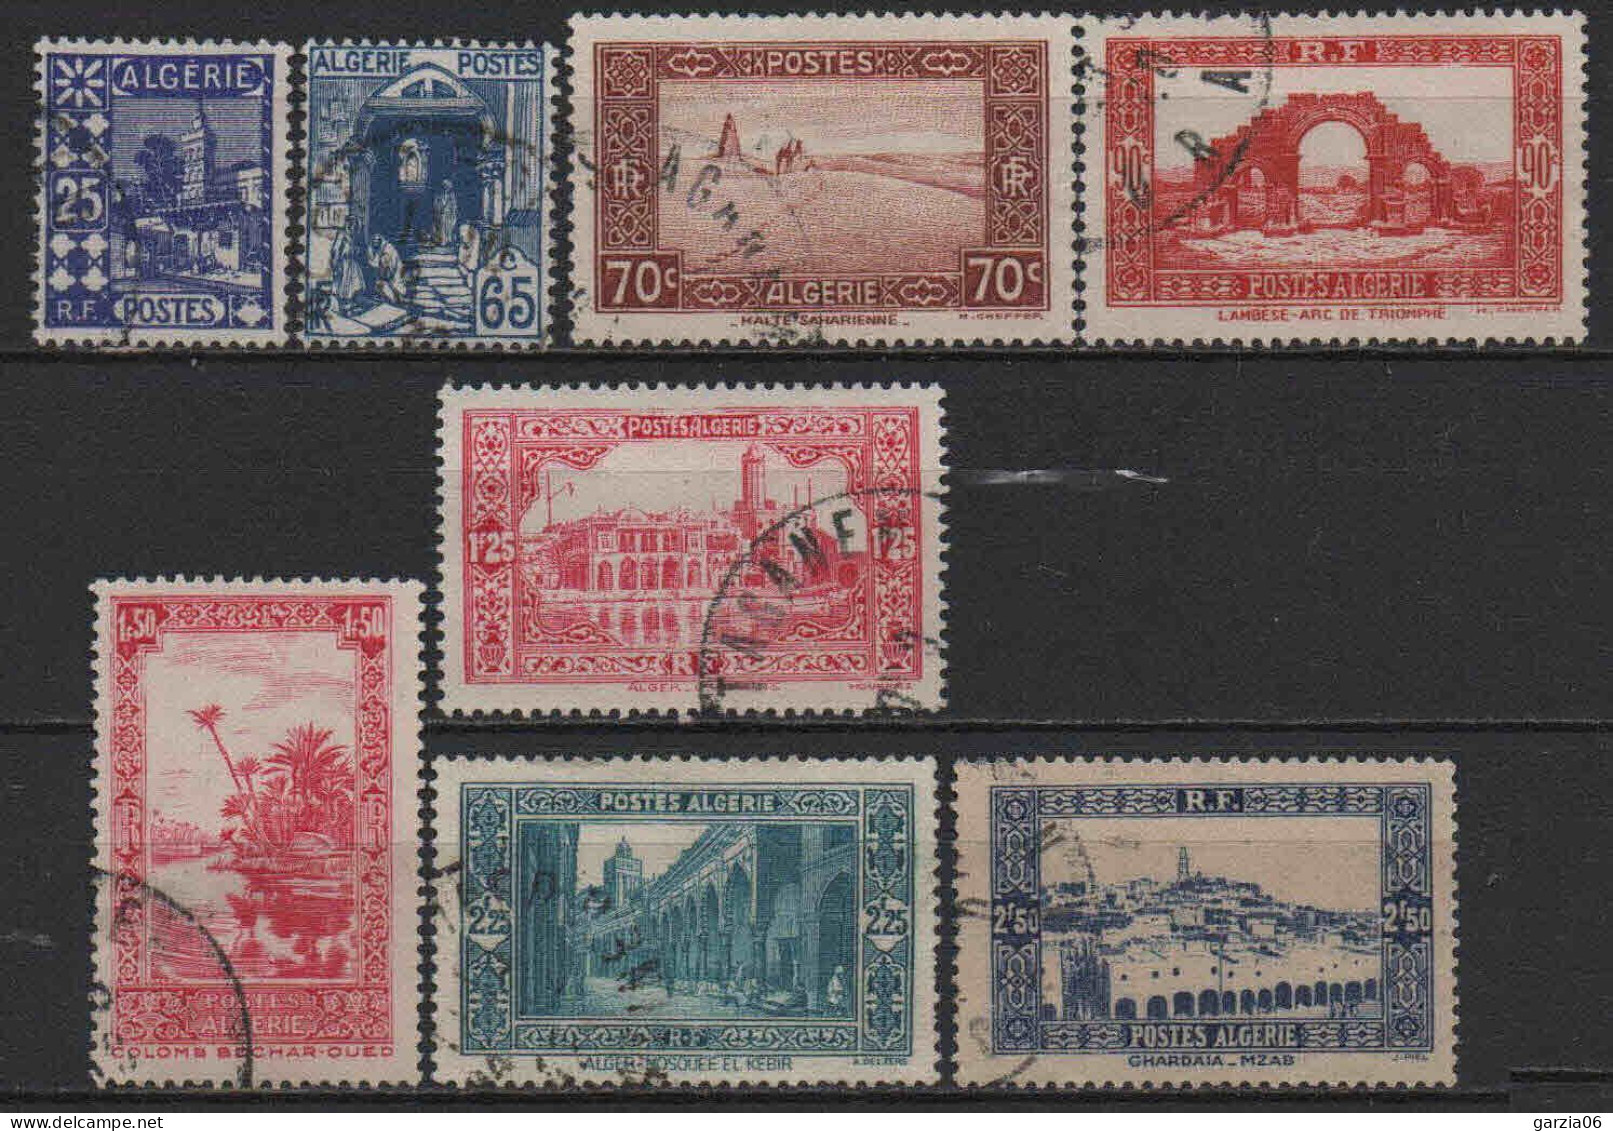 Algérie - 1938 - Nouvelles Valeurs    - N° 136 à 141A - Oblit  - Used - Oblitérés